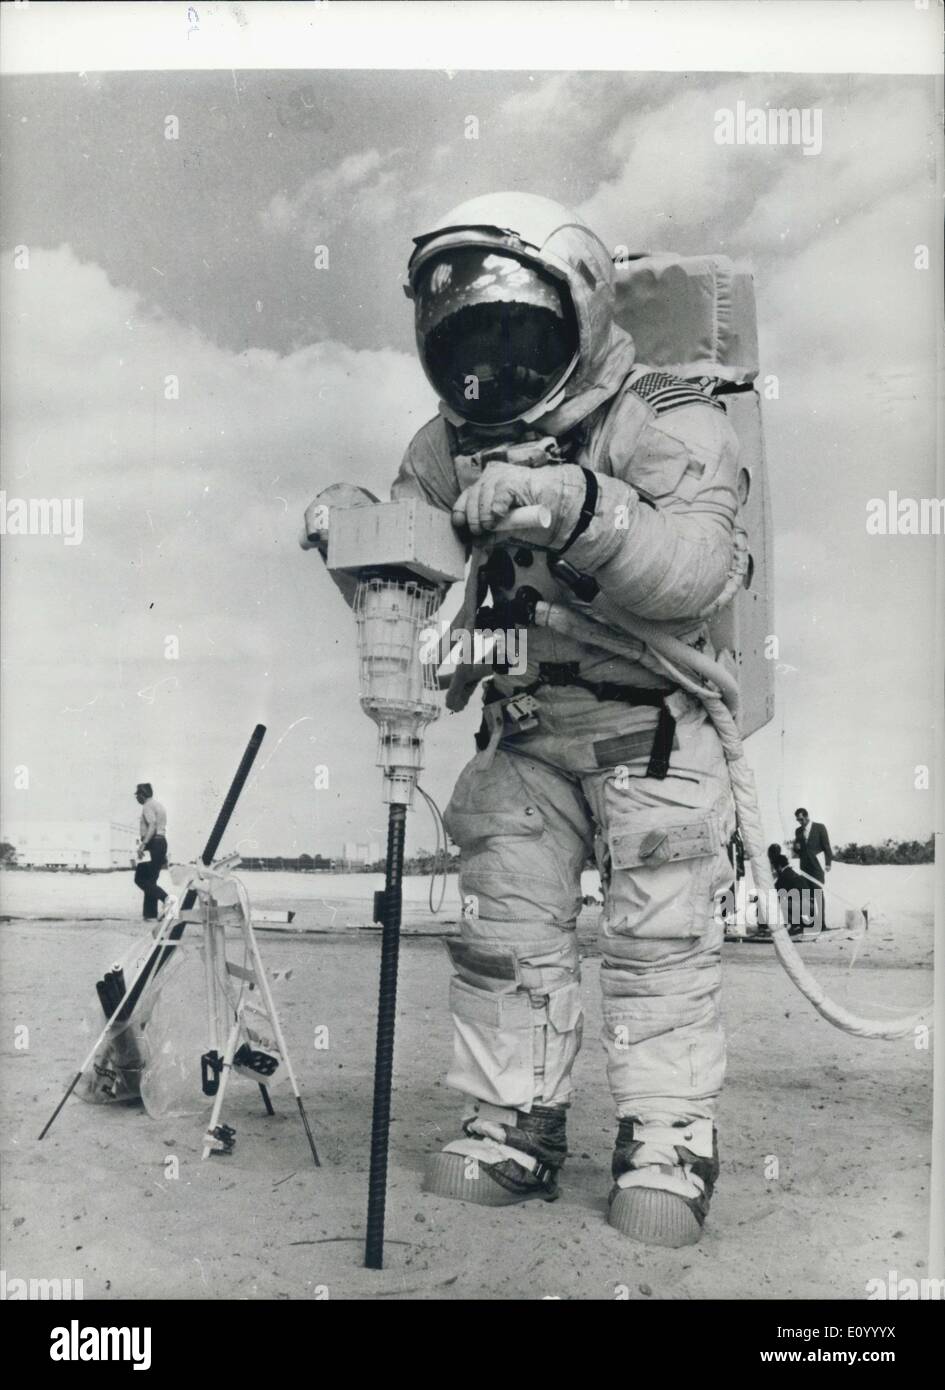 14 décembre 1971 - Préparation de la mission lunaire Apollo 16 : Pilote du module lunaire Apollo 16 Charles Duke, exerce ses activités de forages de surface lunaire au cours de l'entraînement à un site du Centre Spatial Kennedy d'après la lune de Descartes. Duc, et John Young, commandant de la Mission sont prévues pour effectuer trois expéditions au cours de leur projet de 73 heures sur la surface lunaire. Après le décollage de la Lune, les jeunes et le duc rejoindra Thomas Mattingly en orbite cunar pour le retour à la terre. Les astronautes doivent être mis sur la mission d'alunissage en mars prochain. Banque D'Images